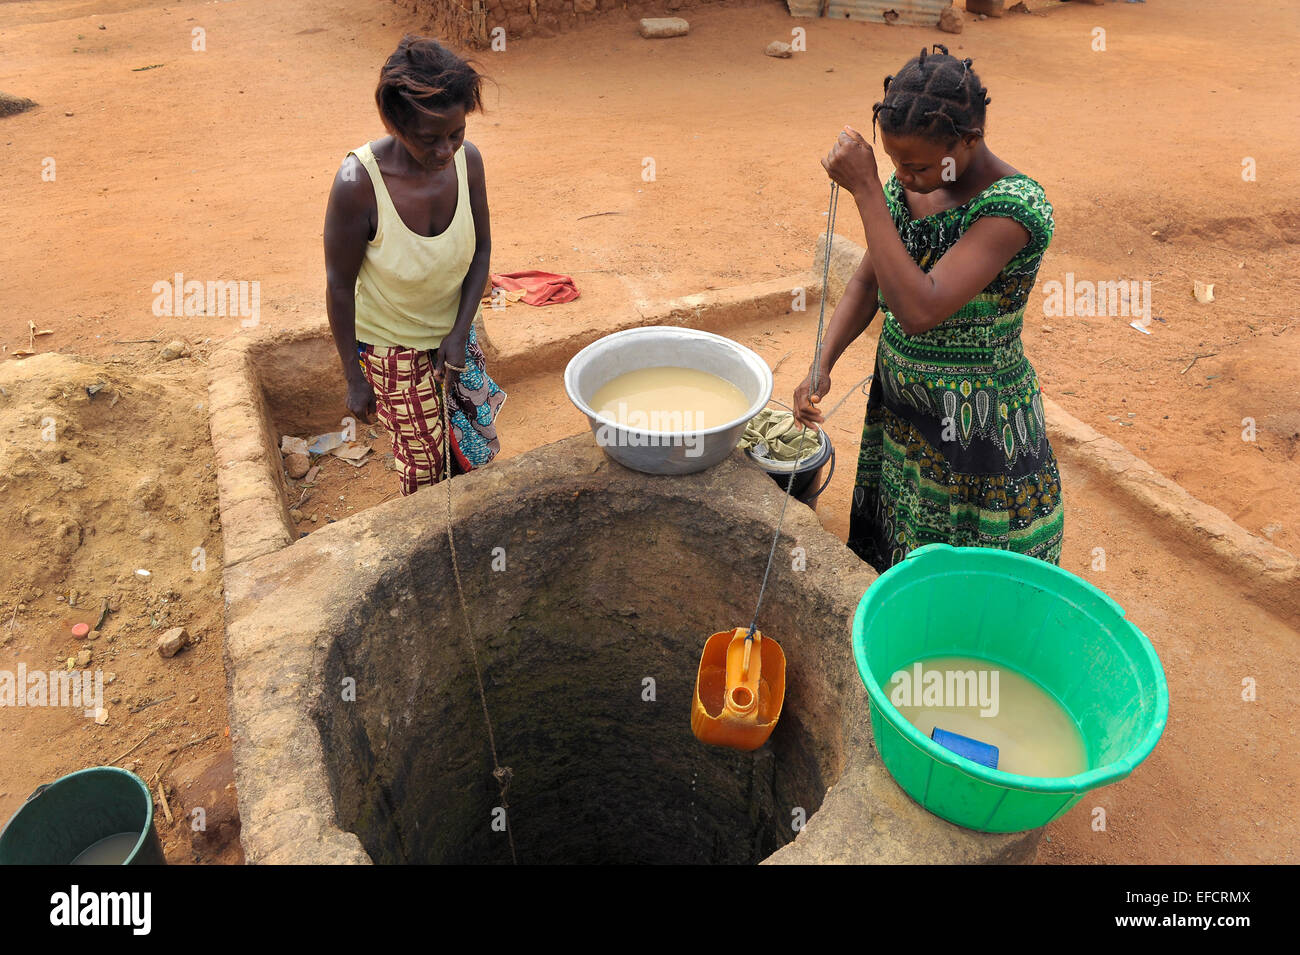 Dos mujeres sacar agua sucia de casi un pozo seco en una región árida de Ghana. Foto de stock